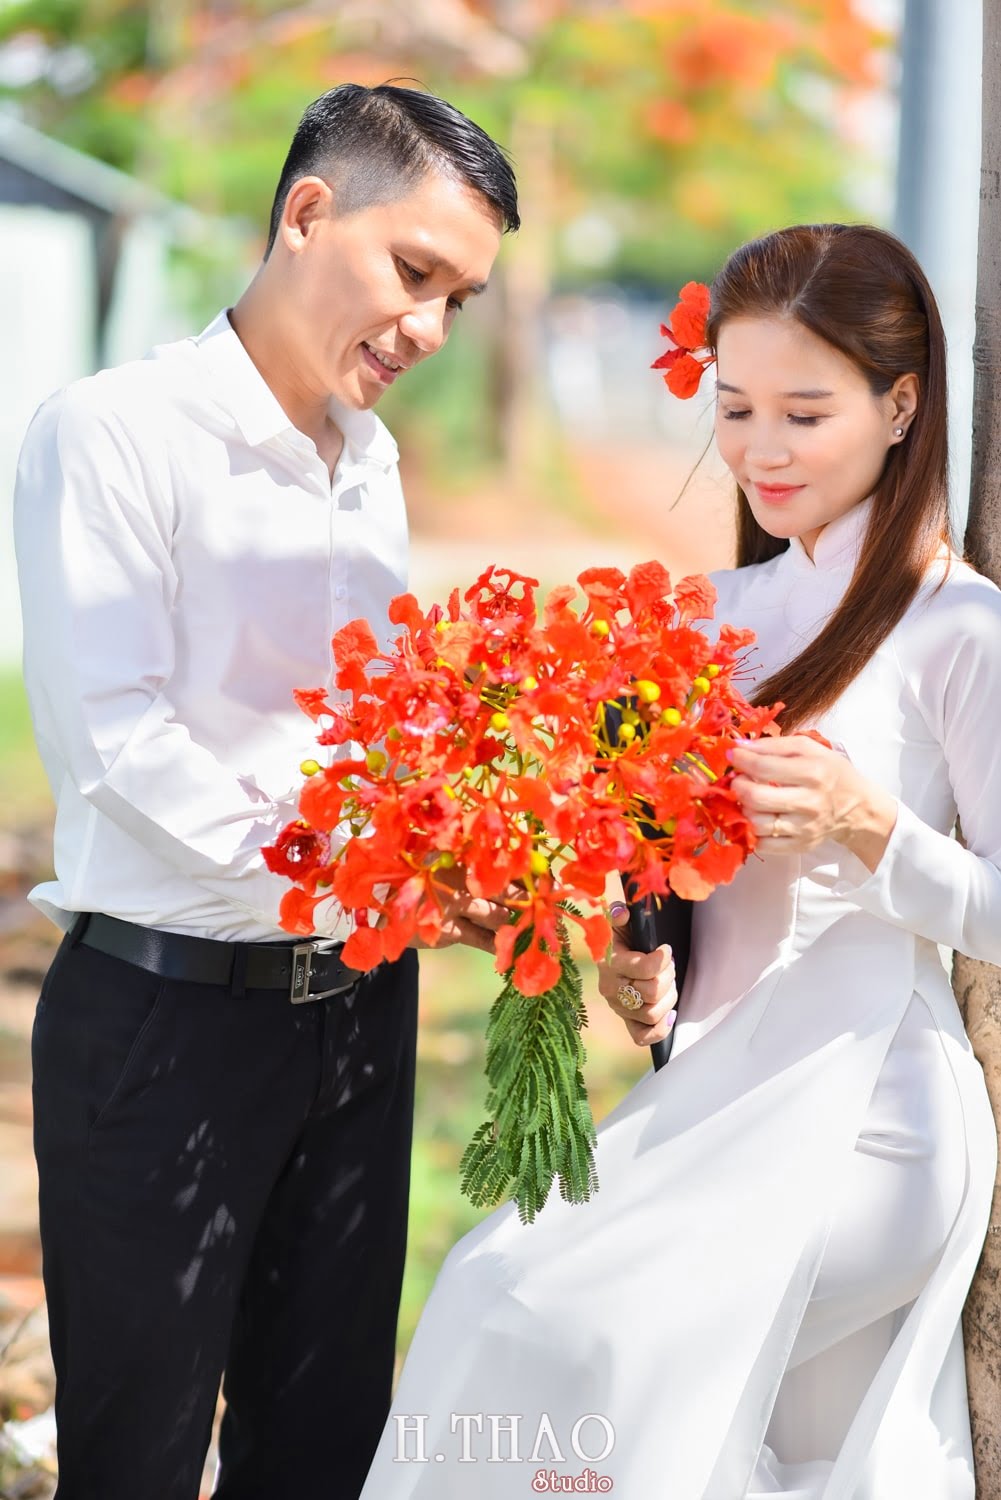 Anh hoa phuong 2 min - Bộ ảnh couple chụp với hoa phượng tuyệt đẹp - HThao Studio